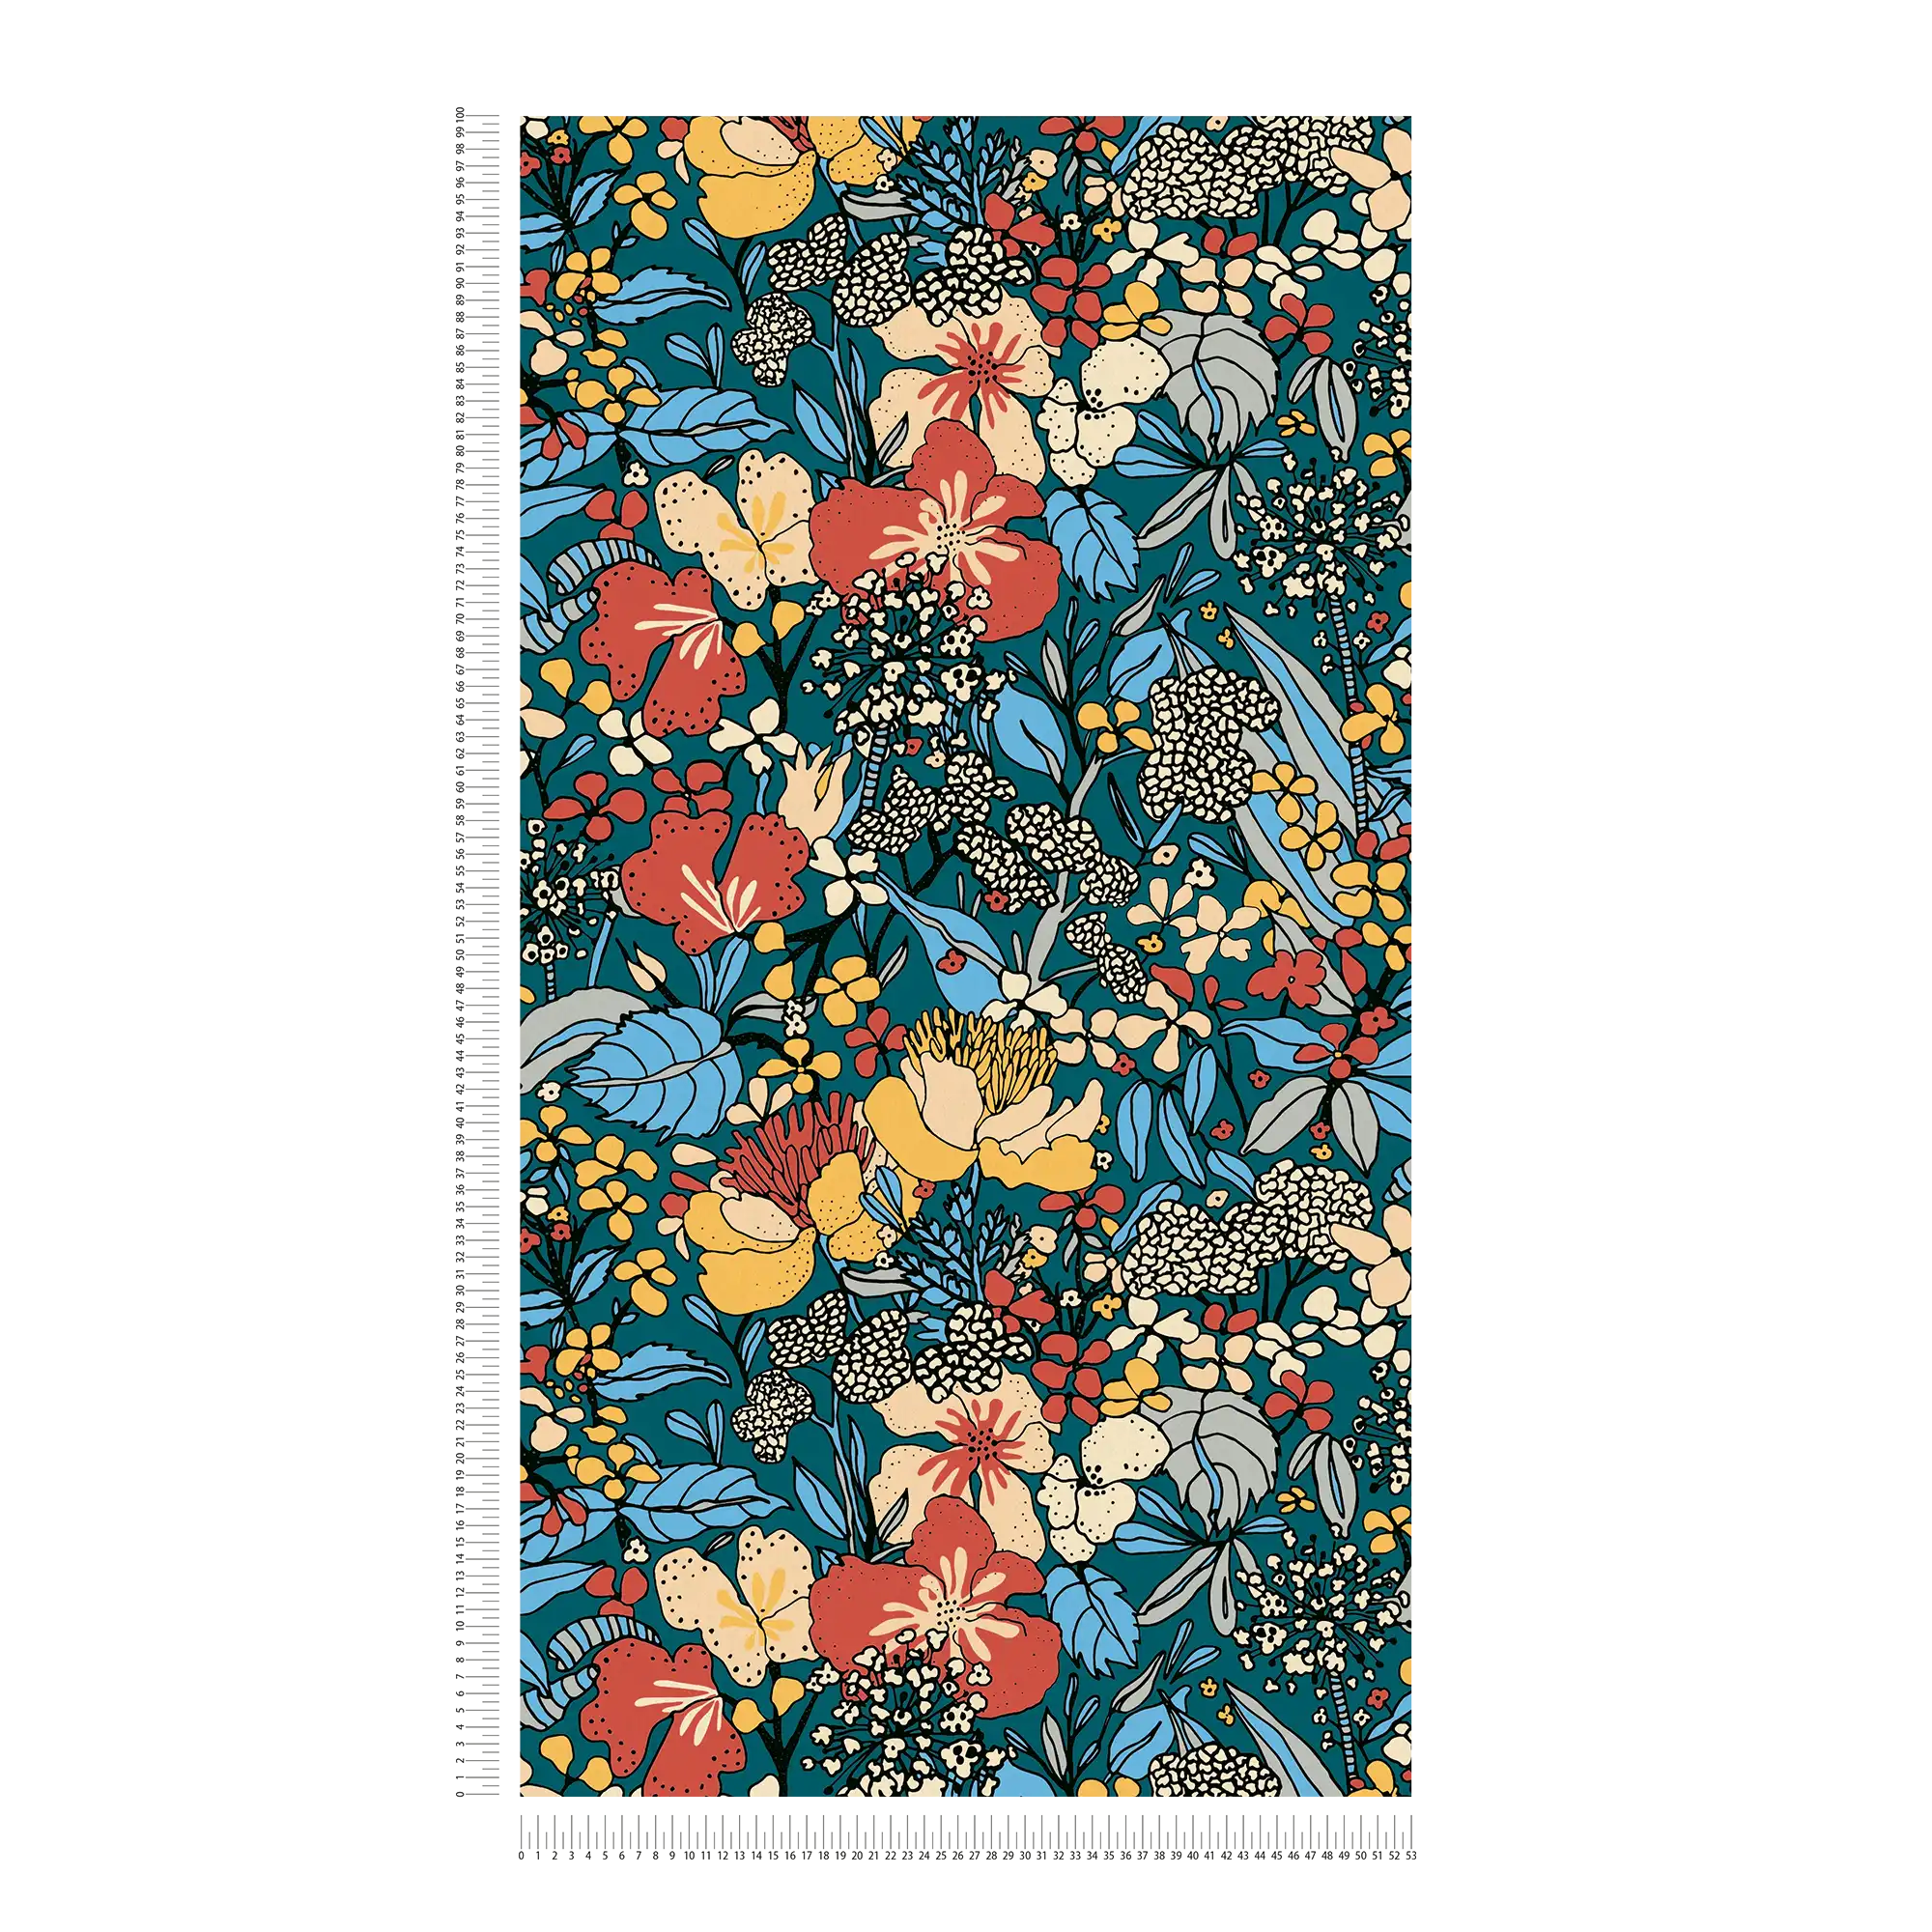             Non-woven wallpaper 70s retro floral design - colourful, blue, orange
        